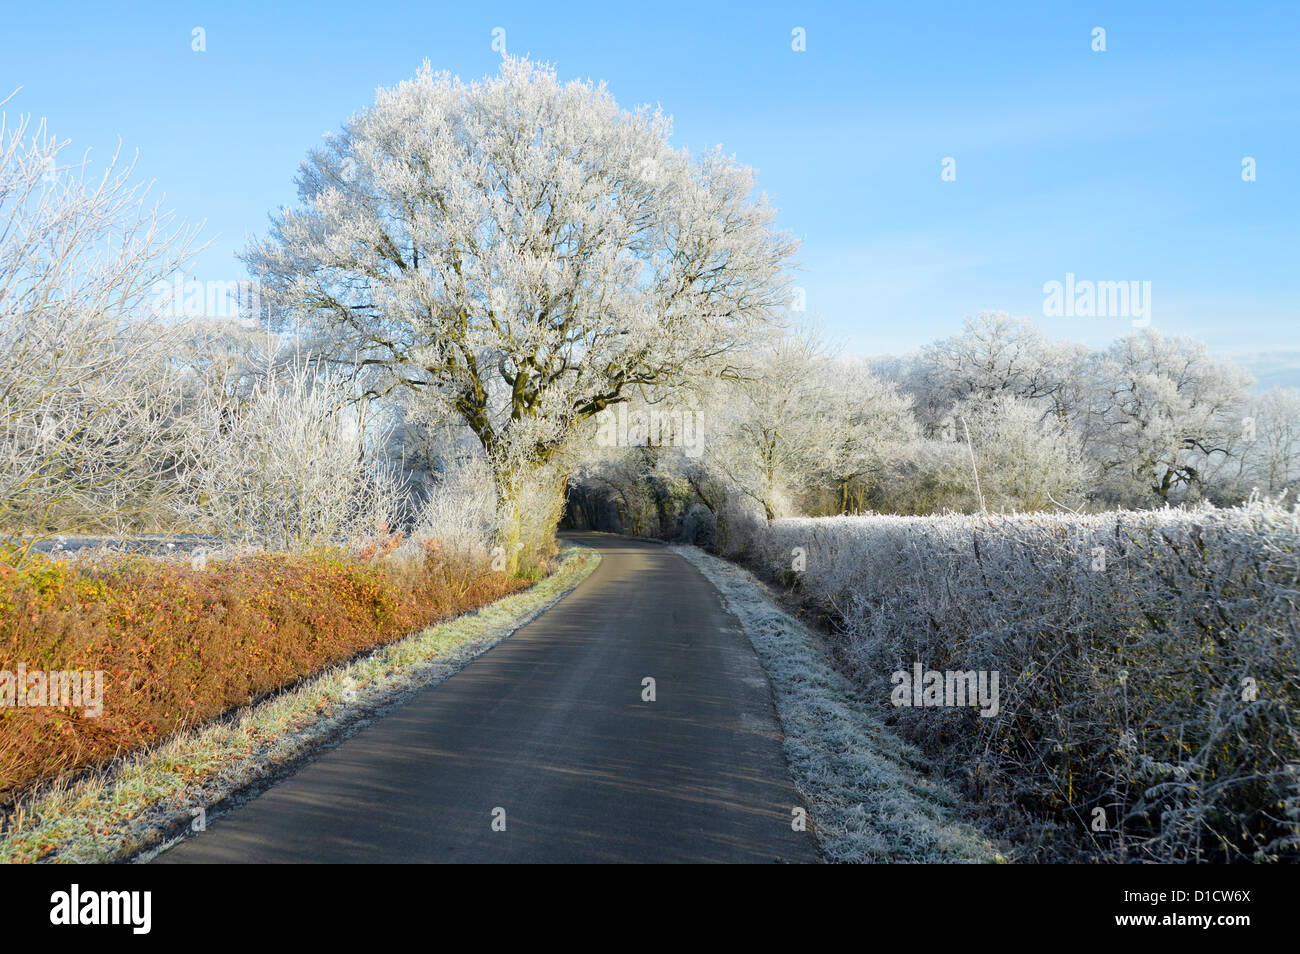 L'hiver sur la campagne arbres boisés et hedgerow dans le pays Paysage routier avec givre tôt le matin sur le chêne anglais Tree Essex Angleterre Royaume-Uni Banque D'Images